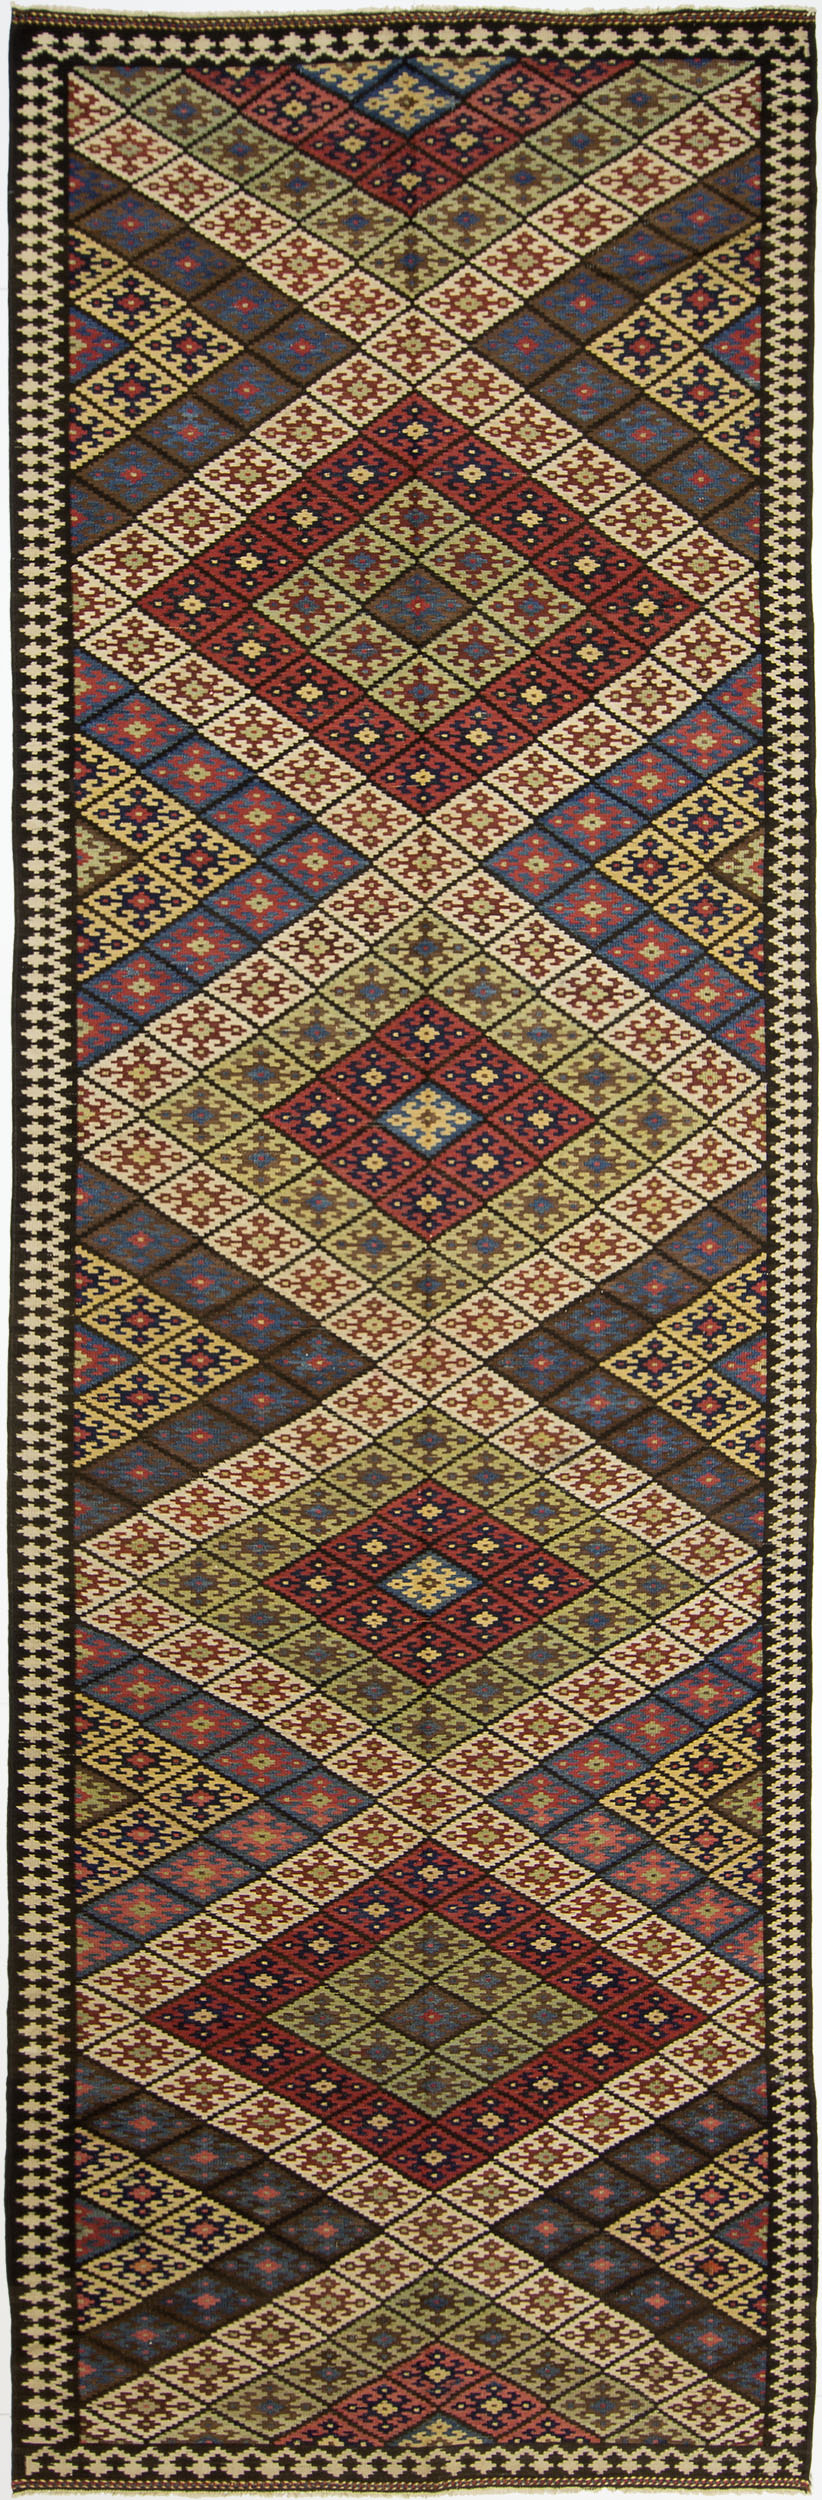 Q'ashqa'i Kilim Gallery Carpet 17' 5" x 5' 6" 